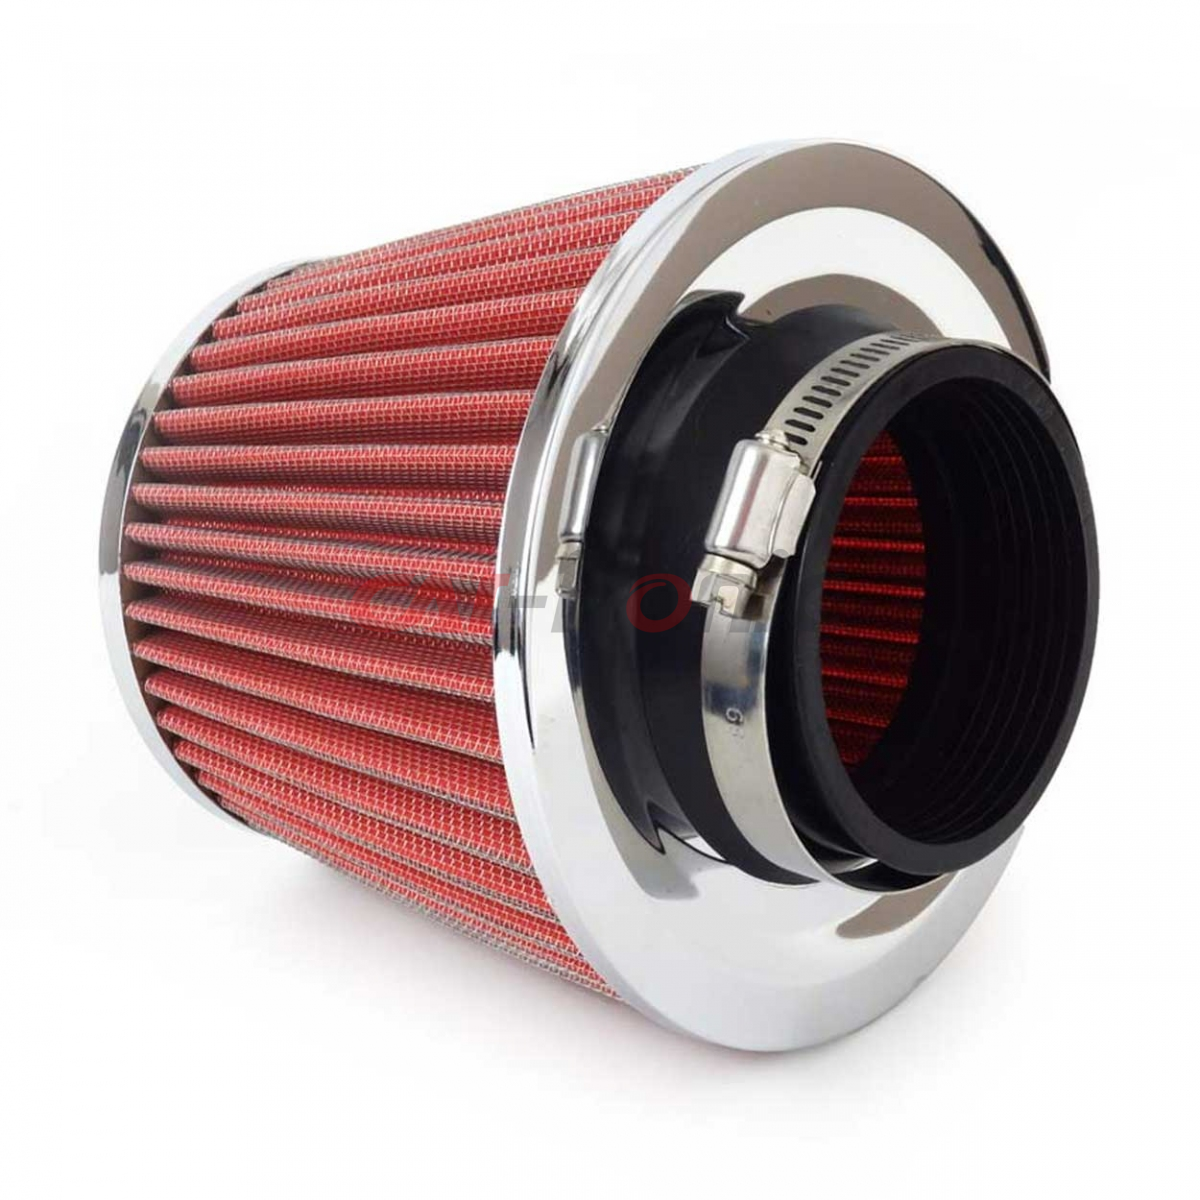 Filtr powietrza stożkowy uniwersalny czerwony/chrom + 3 adaptery AMIO-01282